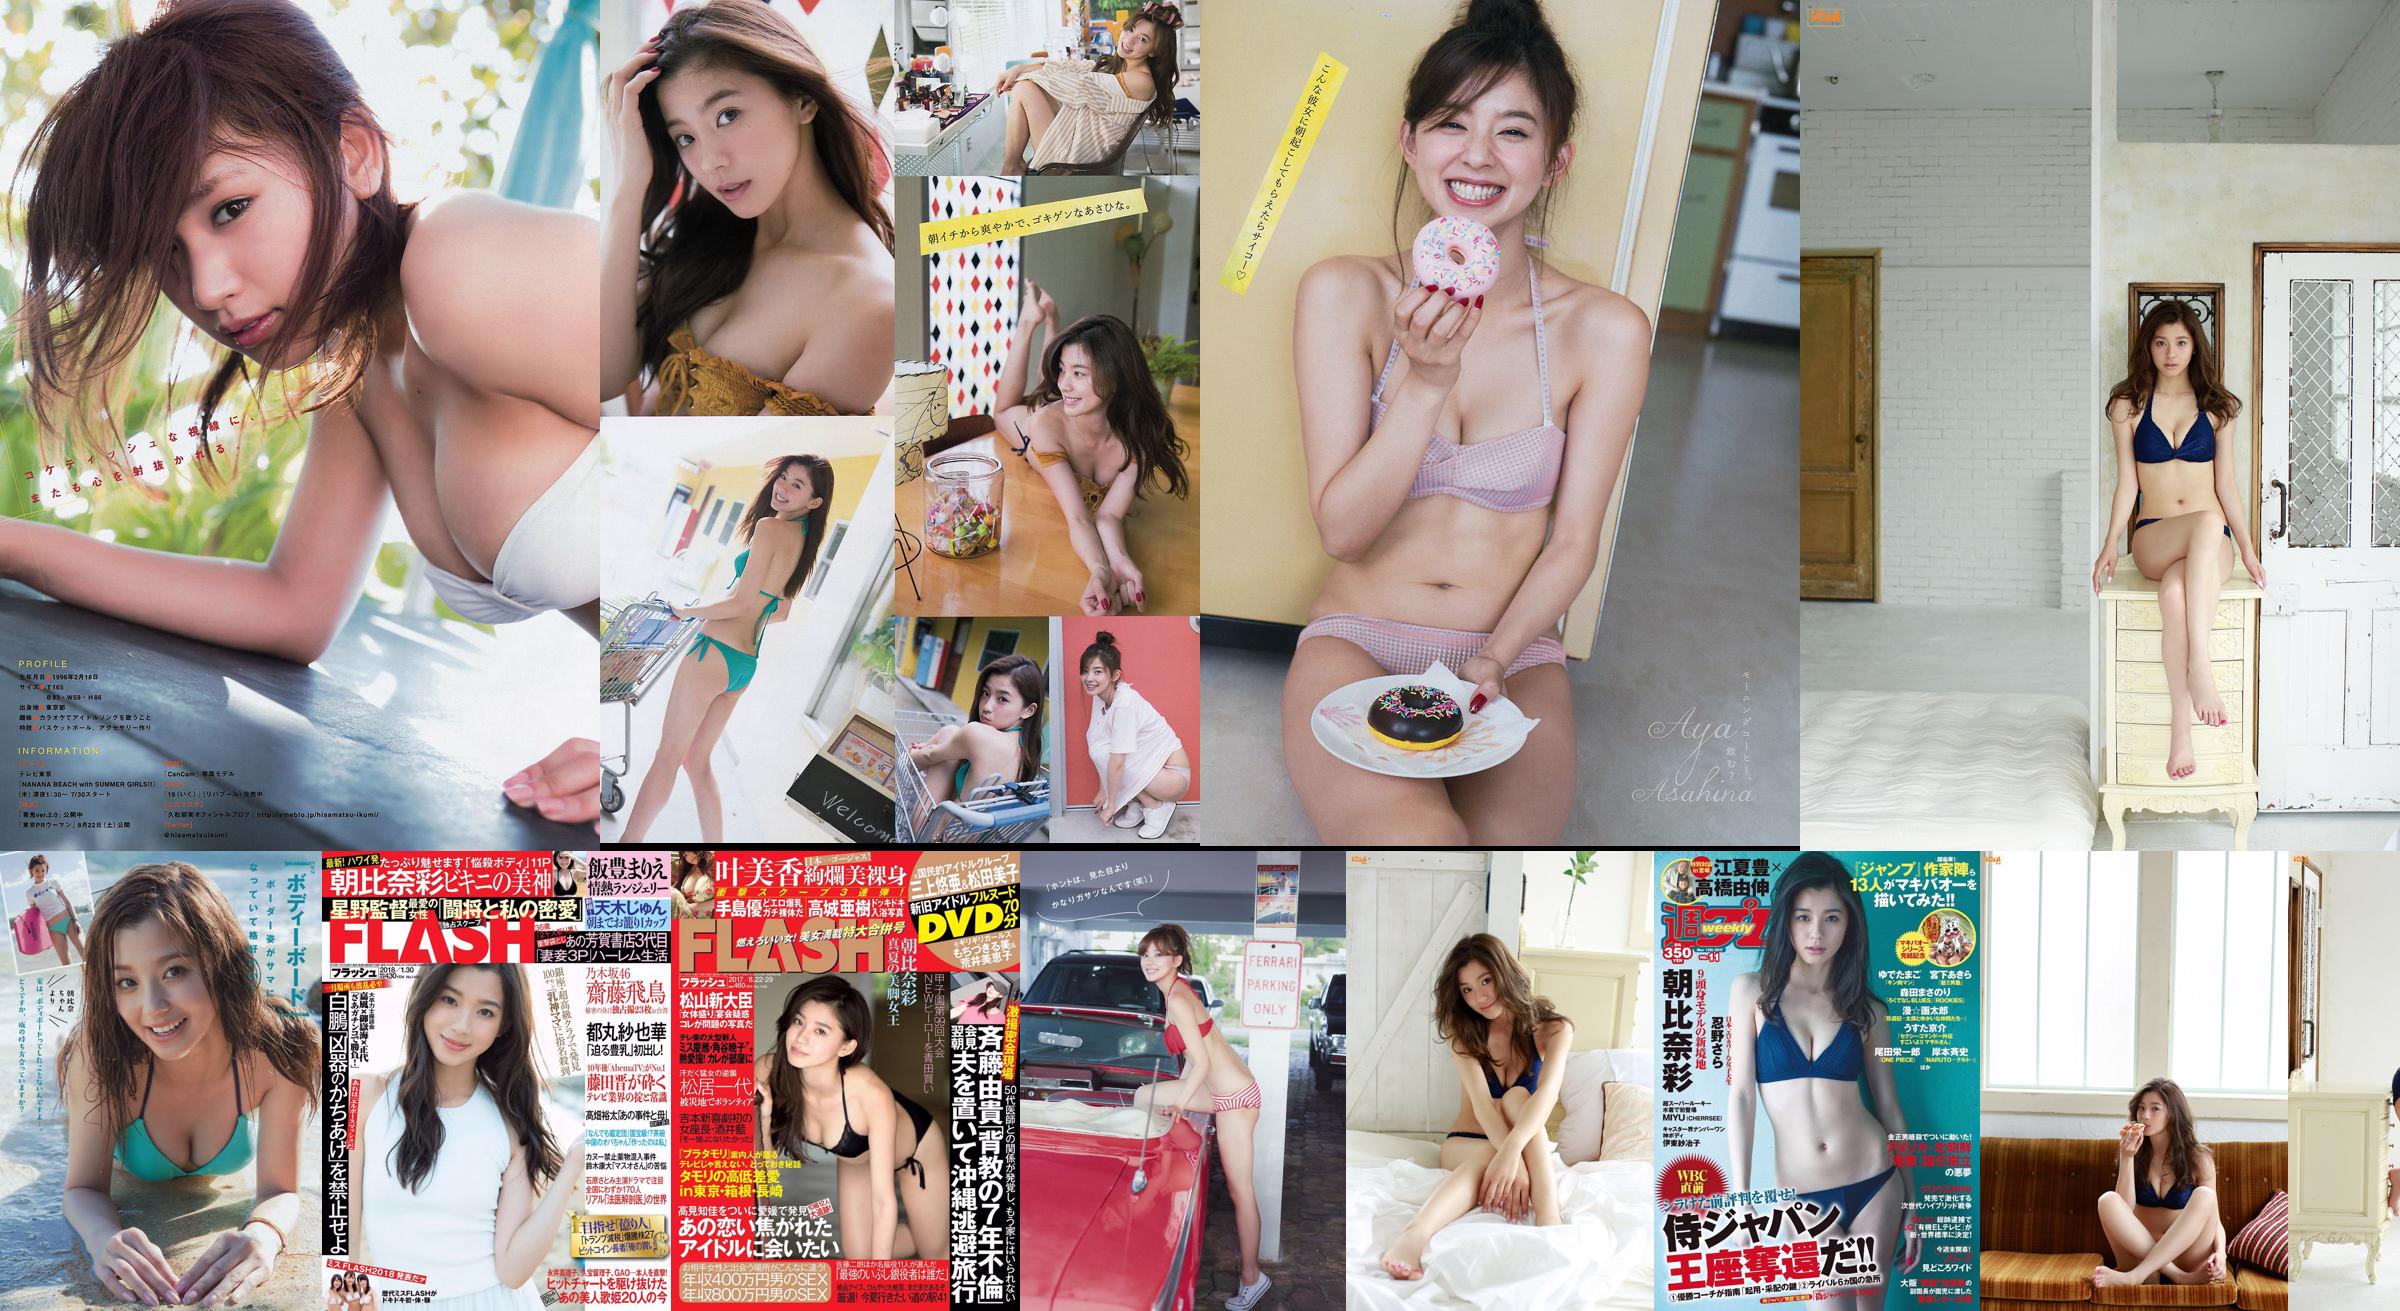 [FLASH] Aya Asahina Mika Kano Yuu Tejima Aki Takajo 2017.08.22-29 Foto No.28bd3c Seite 1